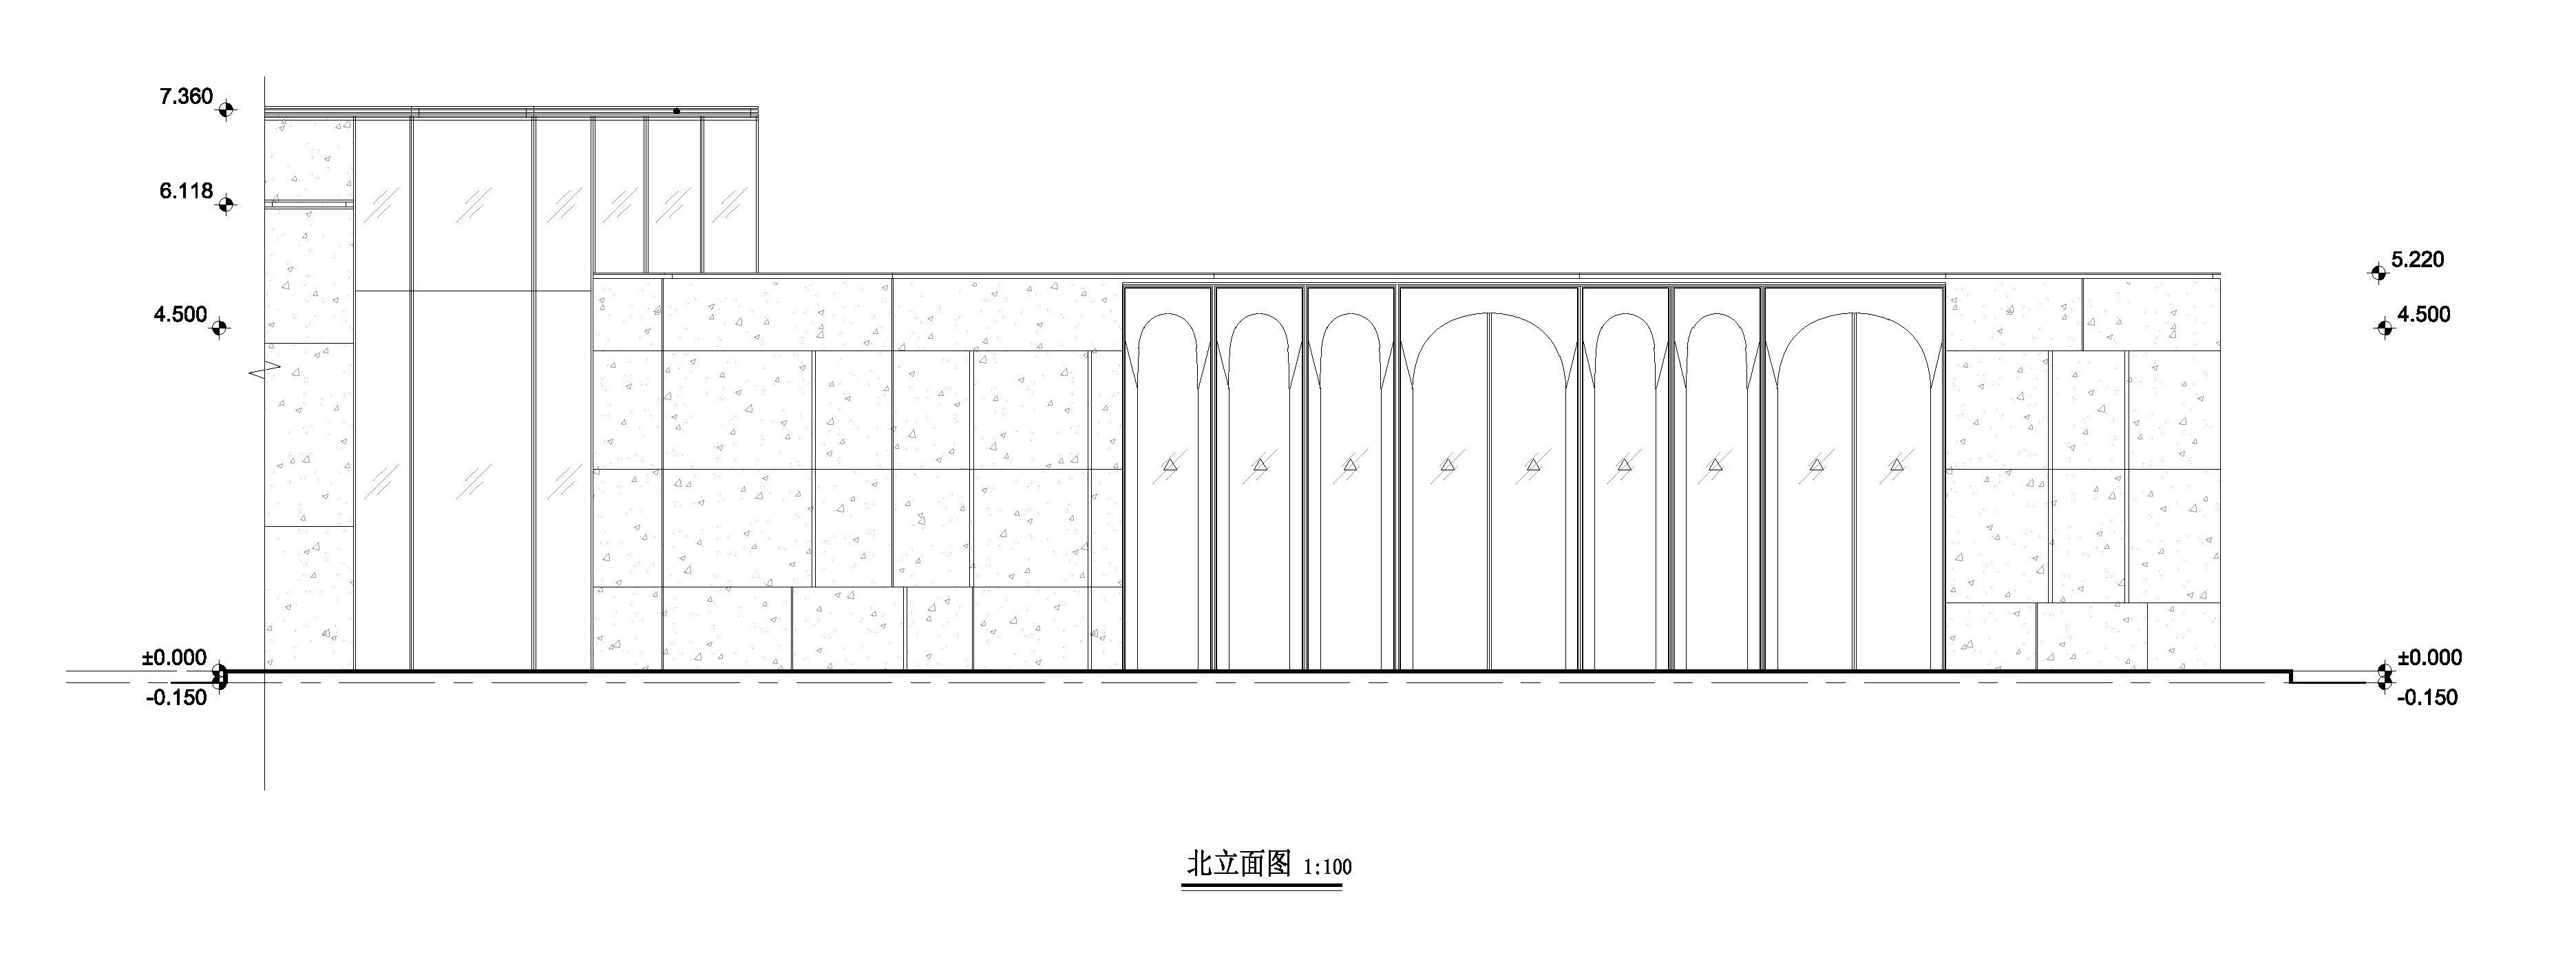 厦门前海湾展示中心建筑设计/PTA上海柏涛